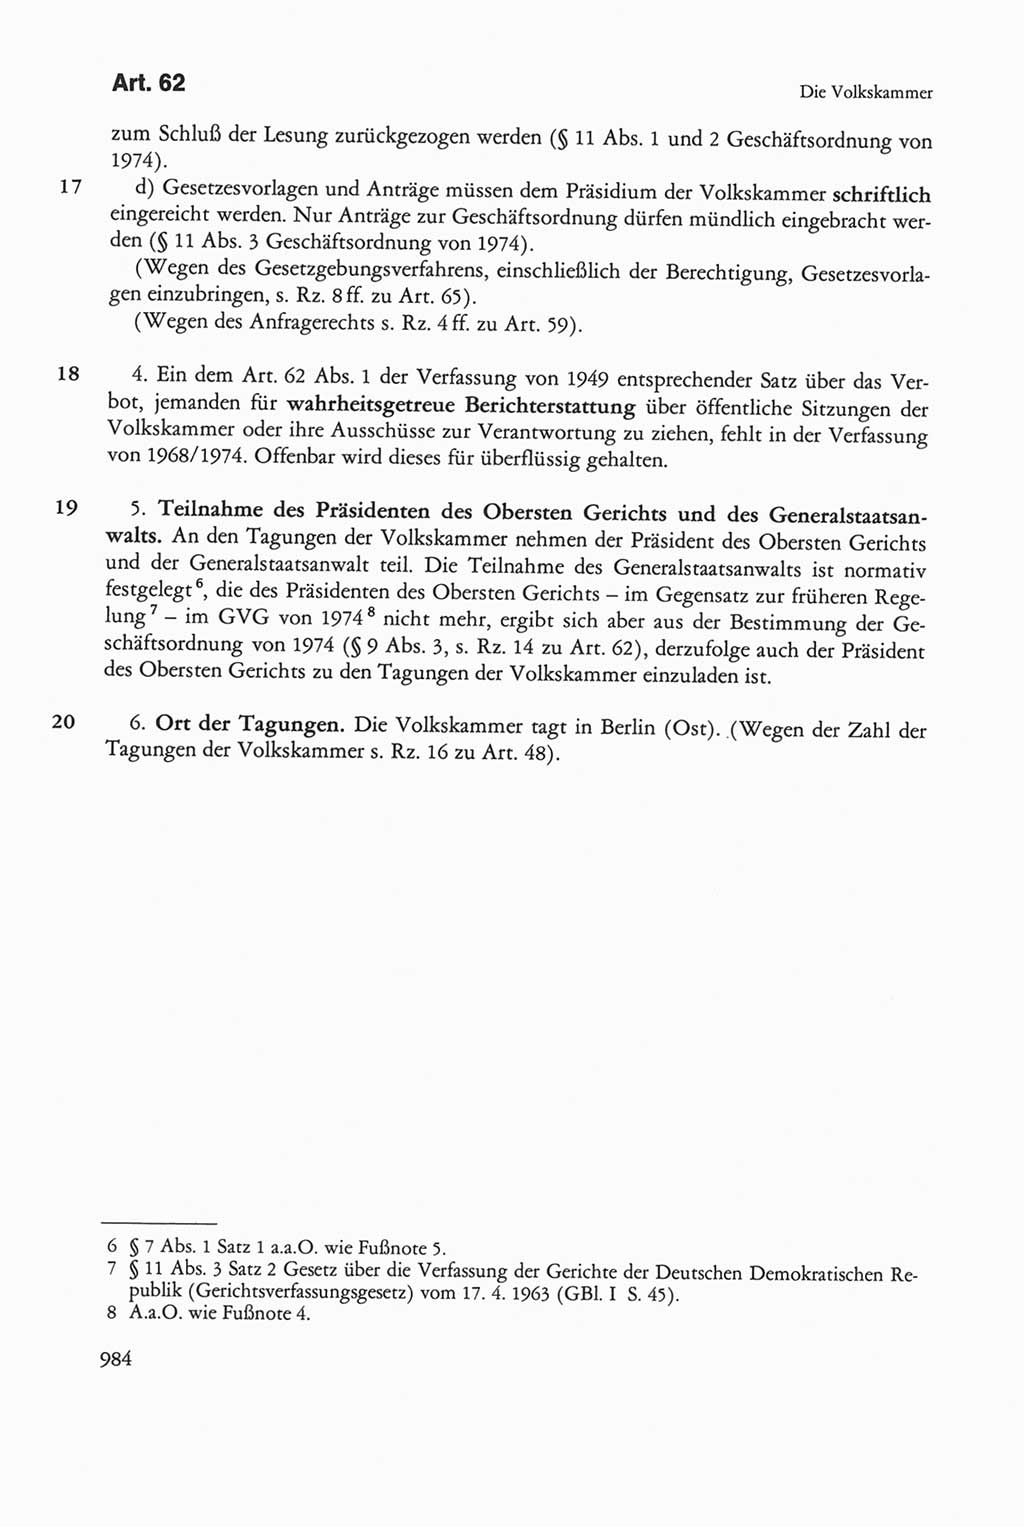 Die sozialistische Verfassung der Deutschen Demokratischen Republik (DDR), Kommentar mit einem Nachtrag 1997, Seite 984 (Soz. Verf. DDR Komm. Nachtr. 1997, S. 984)